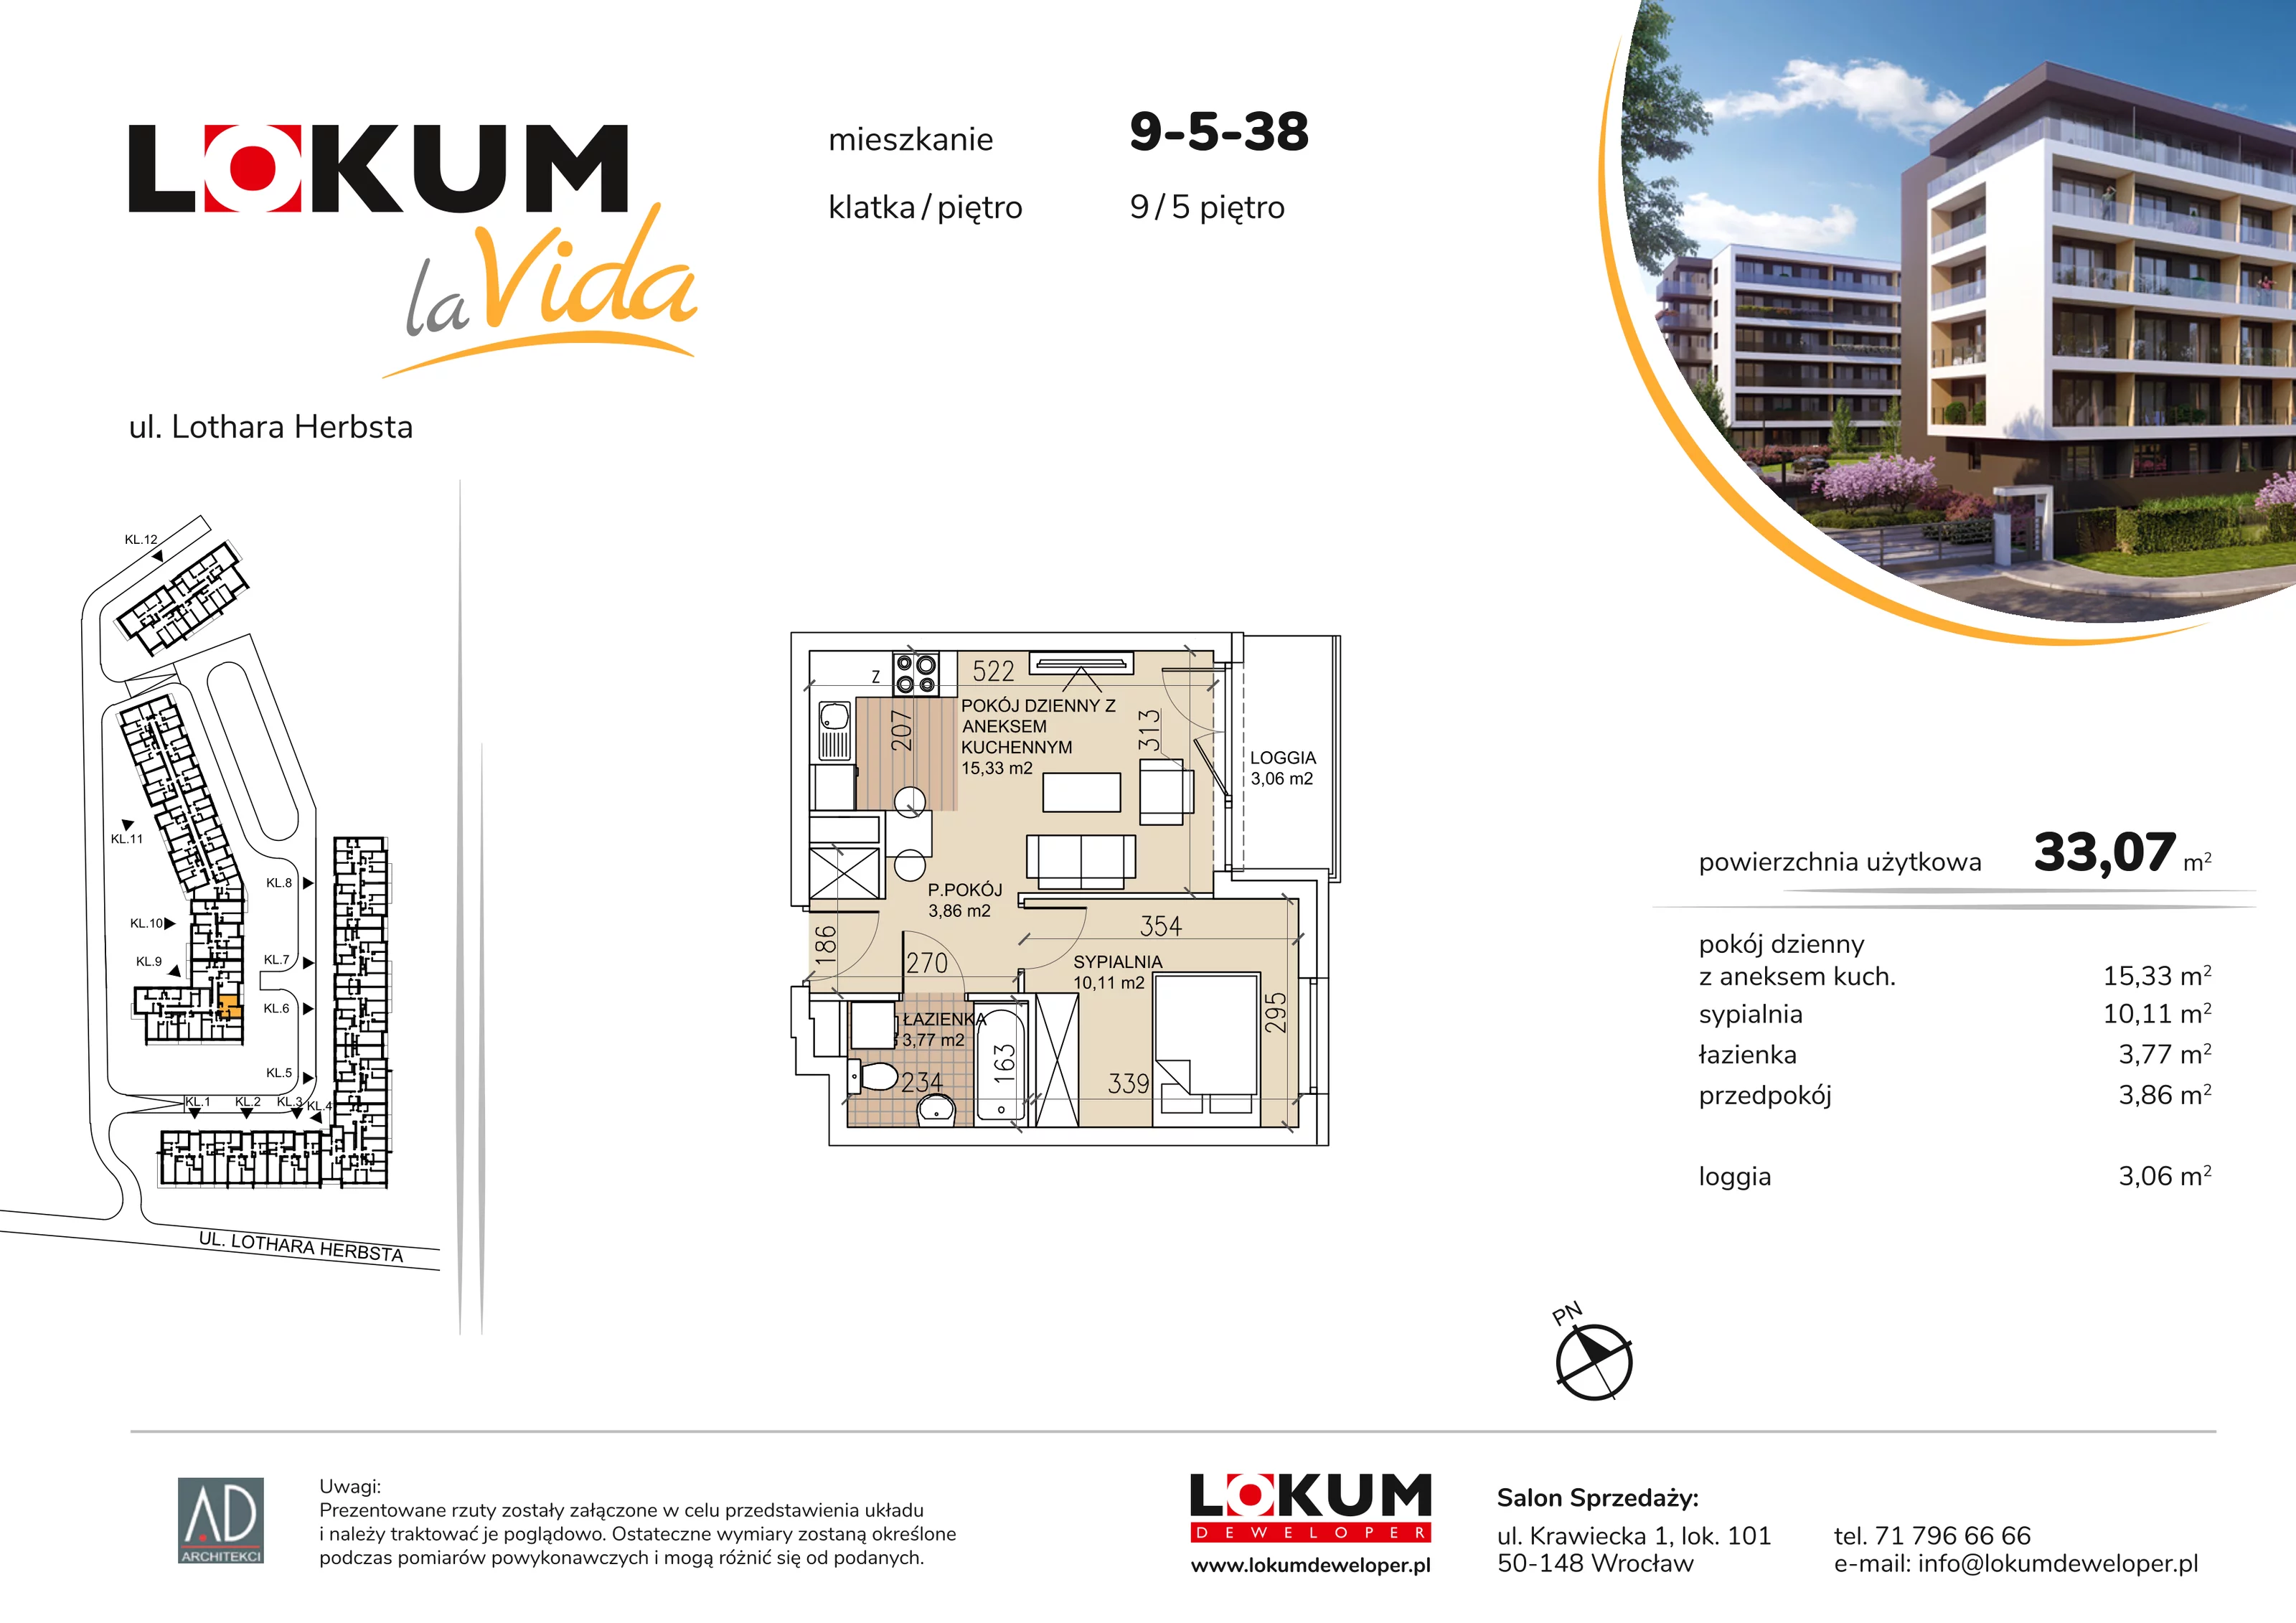 Mieszkanie 33,07 m², piętro 5, oferta nr 9-5-38, Lokum la Vida, Wrocław, Sołtysowice, ul. Lothara Herbsta